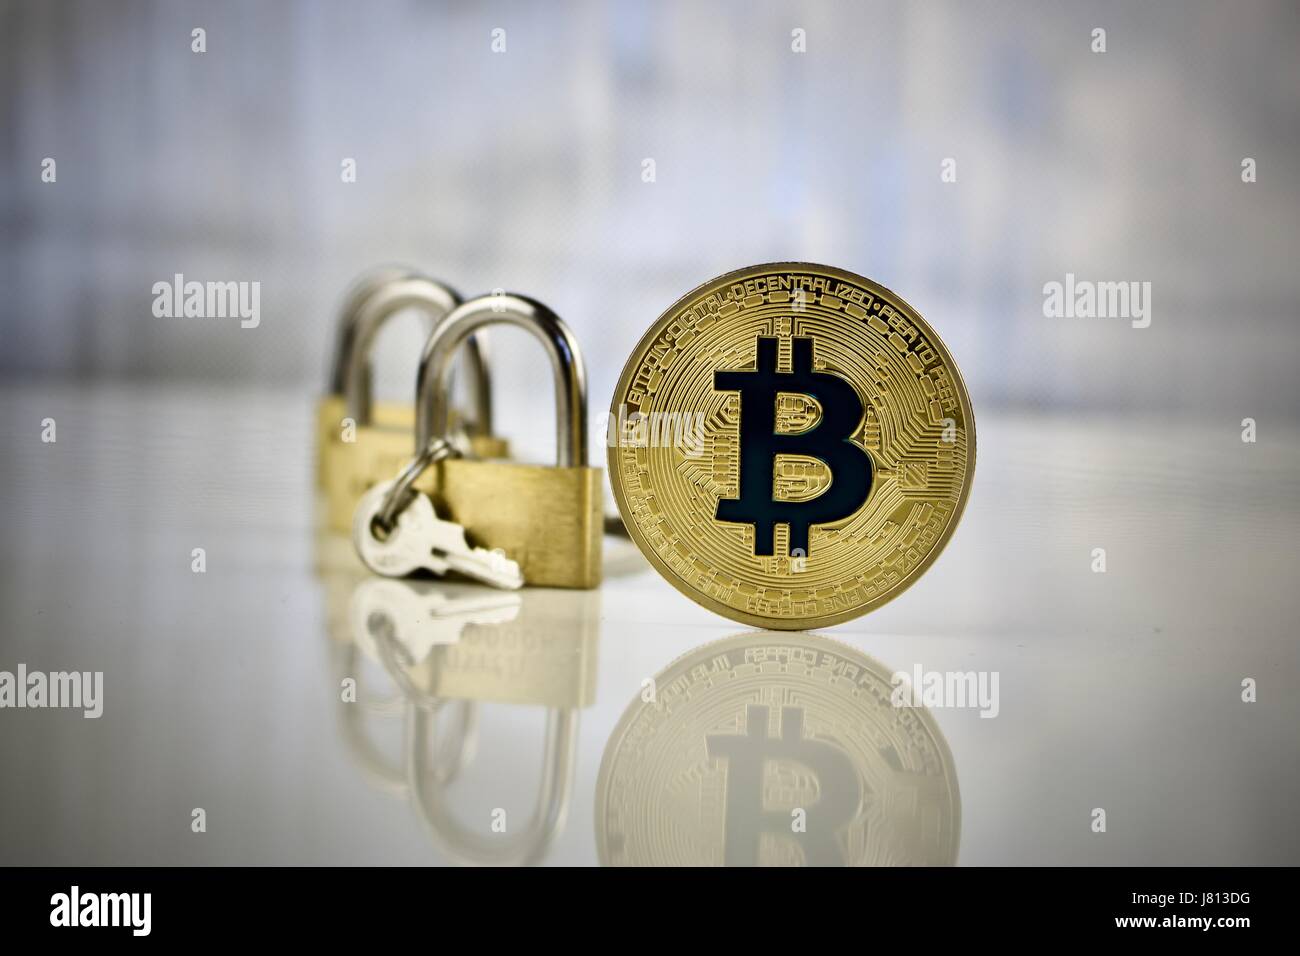 Valuta digitale oro fisico bitcoin coin - lucchetti concetto. Fissare i pagamenti on line con una nuova tecnologia. Foto Stock